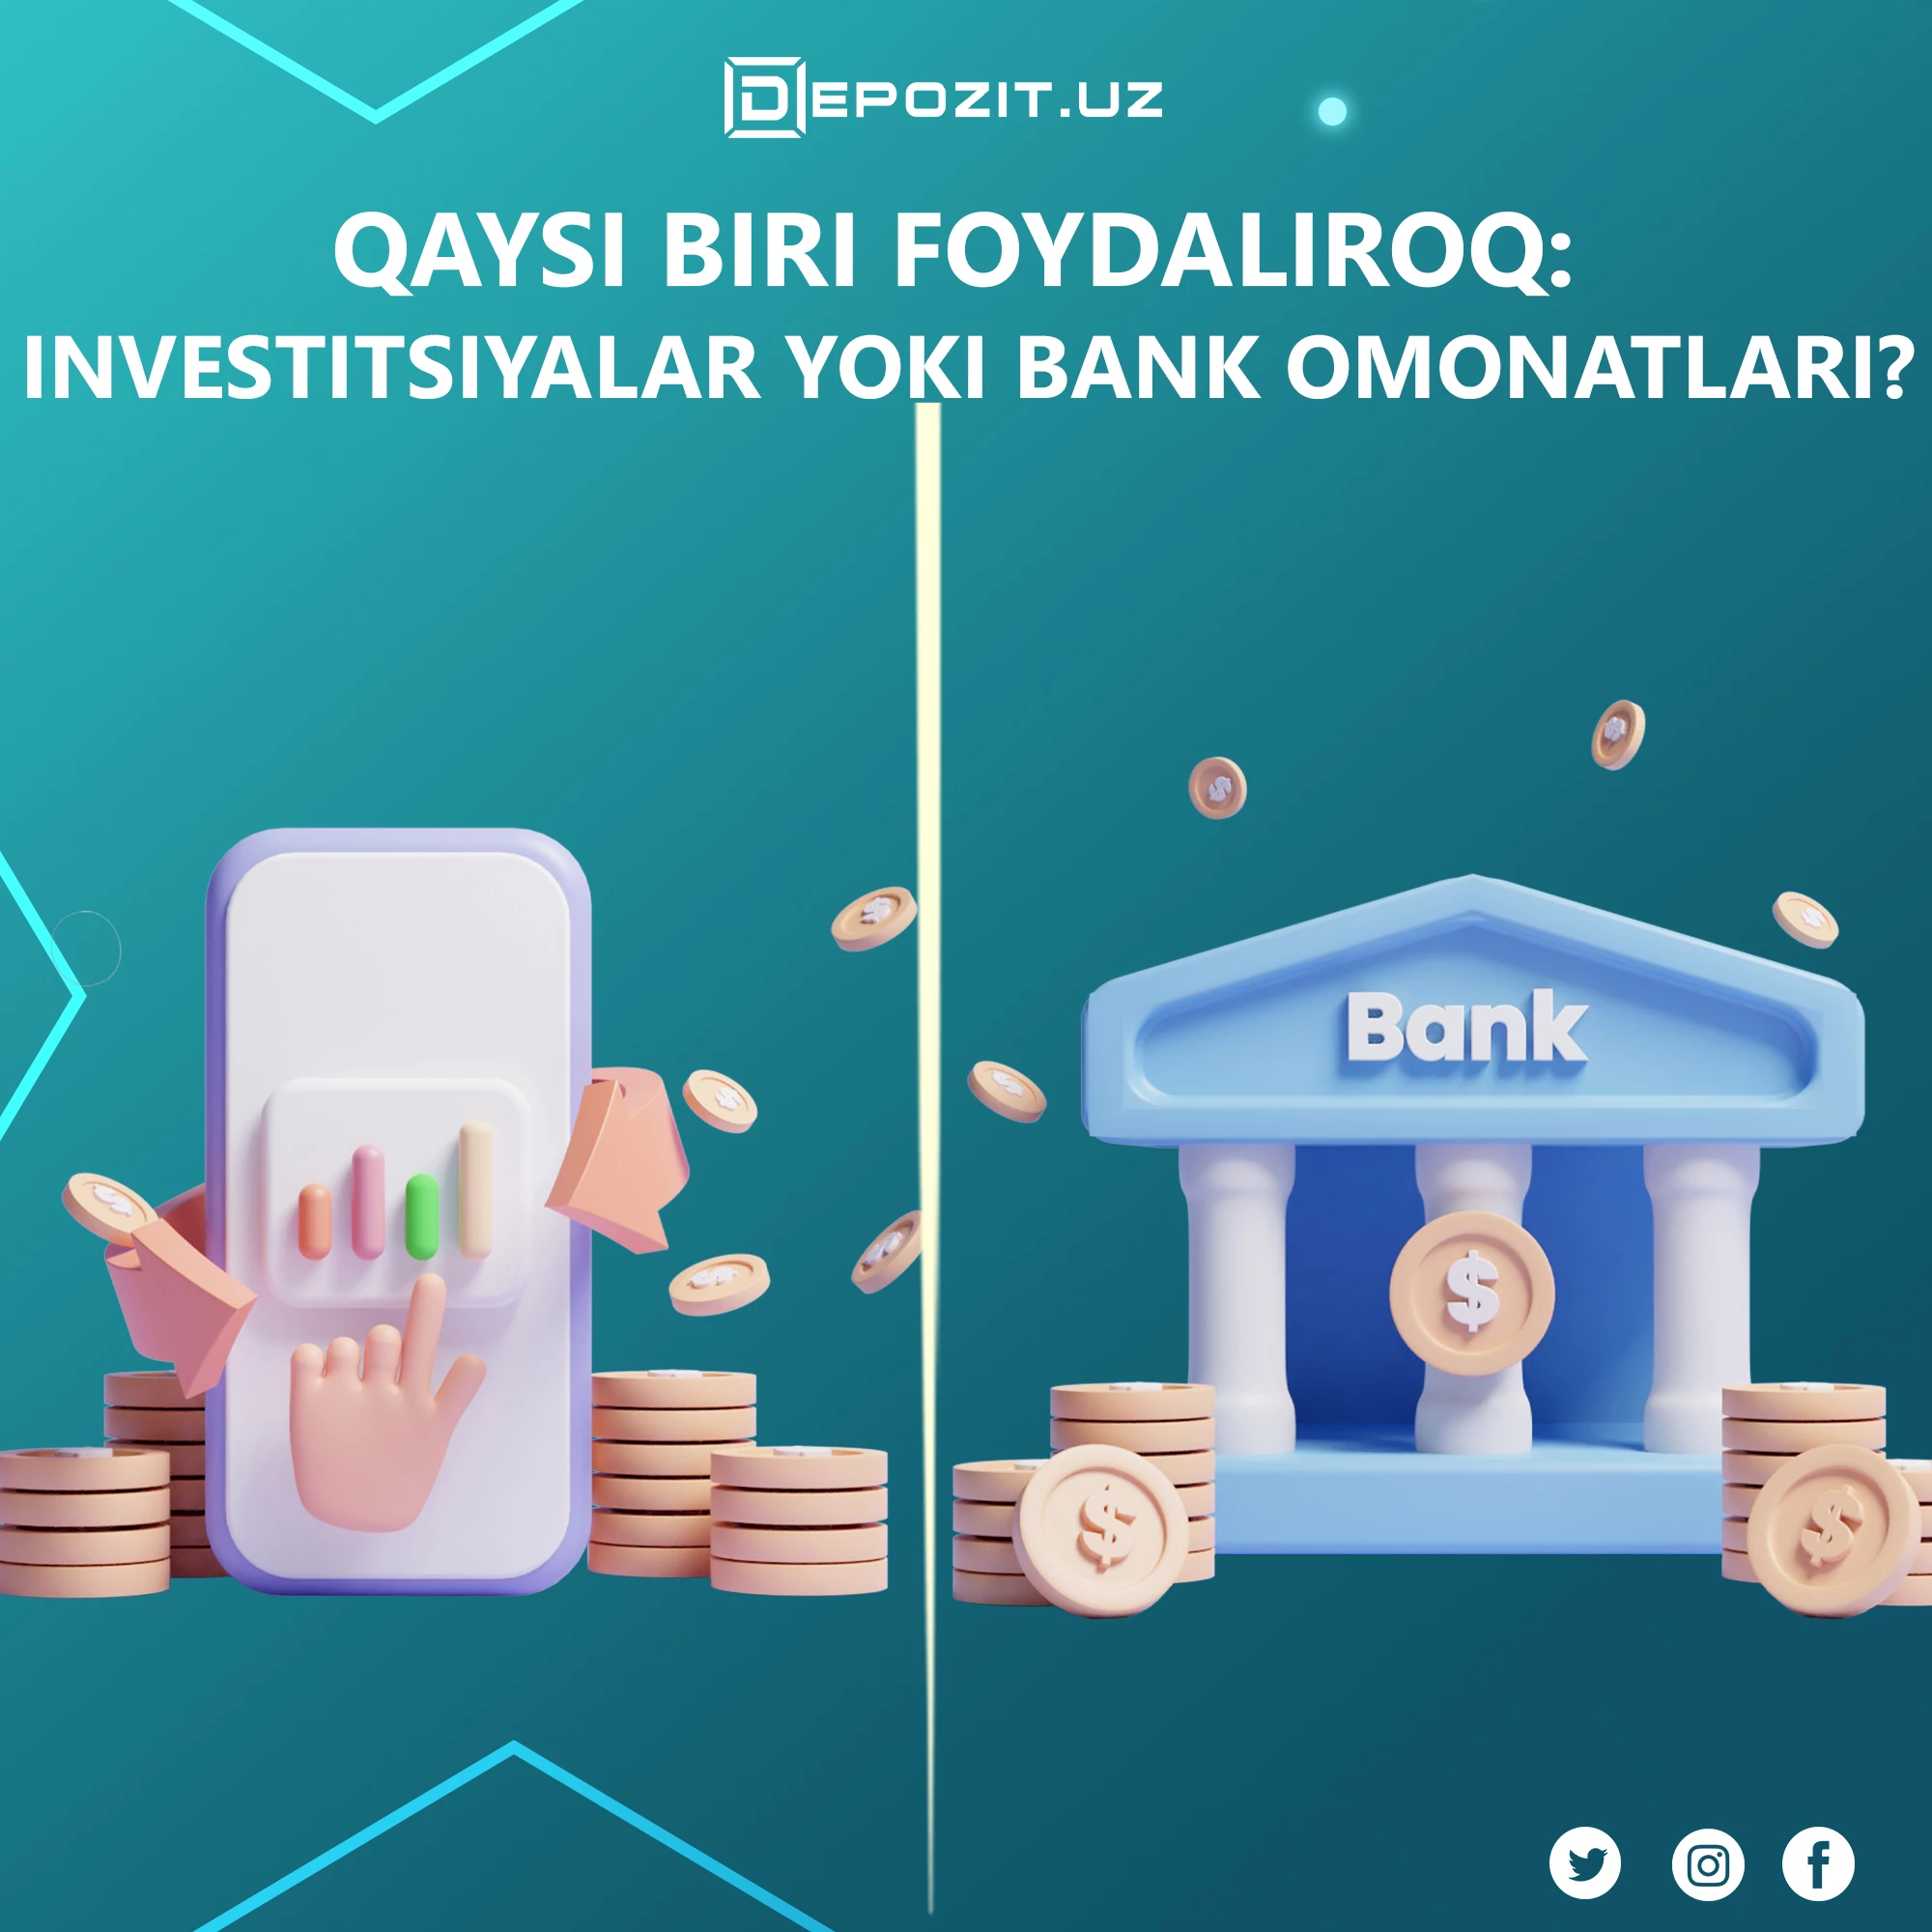 depozit.uz Qaysi biri foydaliroq: investitsiyalar yoki bank omonatlari?